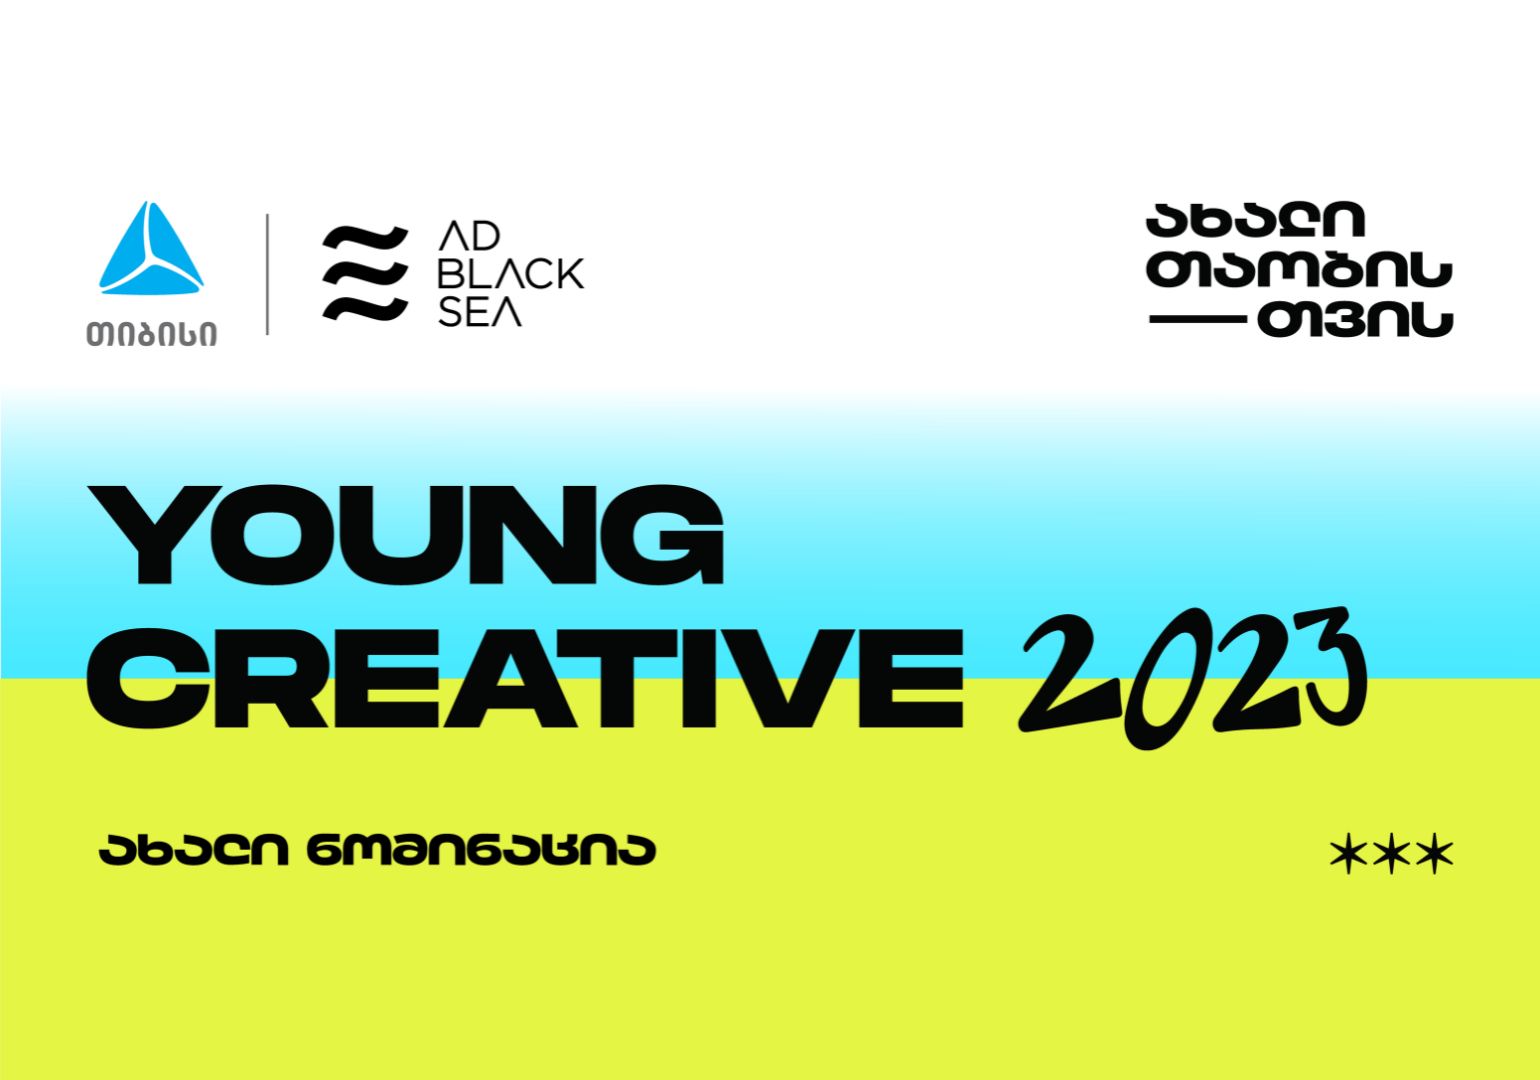 თიბისი კრეატივის საერთაშორისო ფესტივალ AD BLACK SEA-ზე ახალ ნომინაციას - Young Creative - წარადგენს